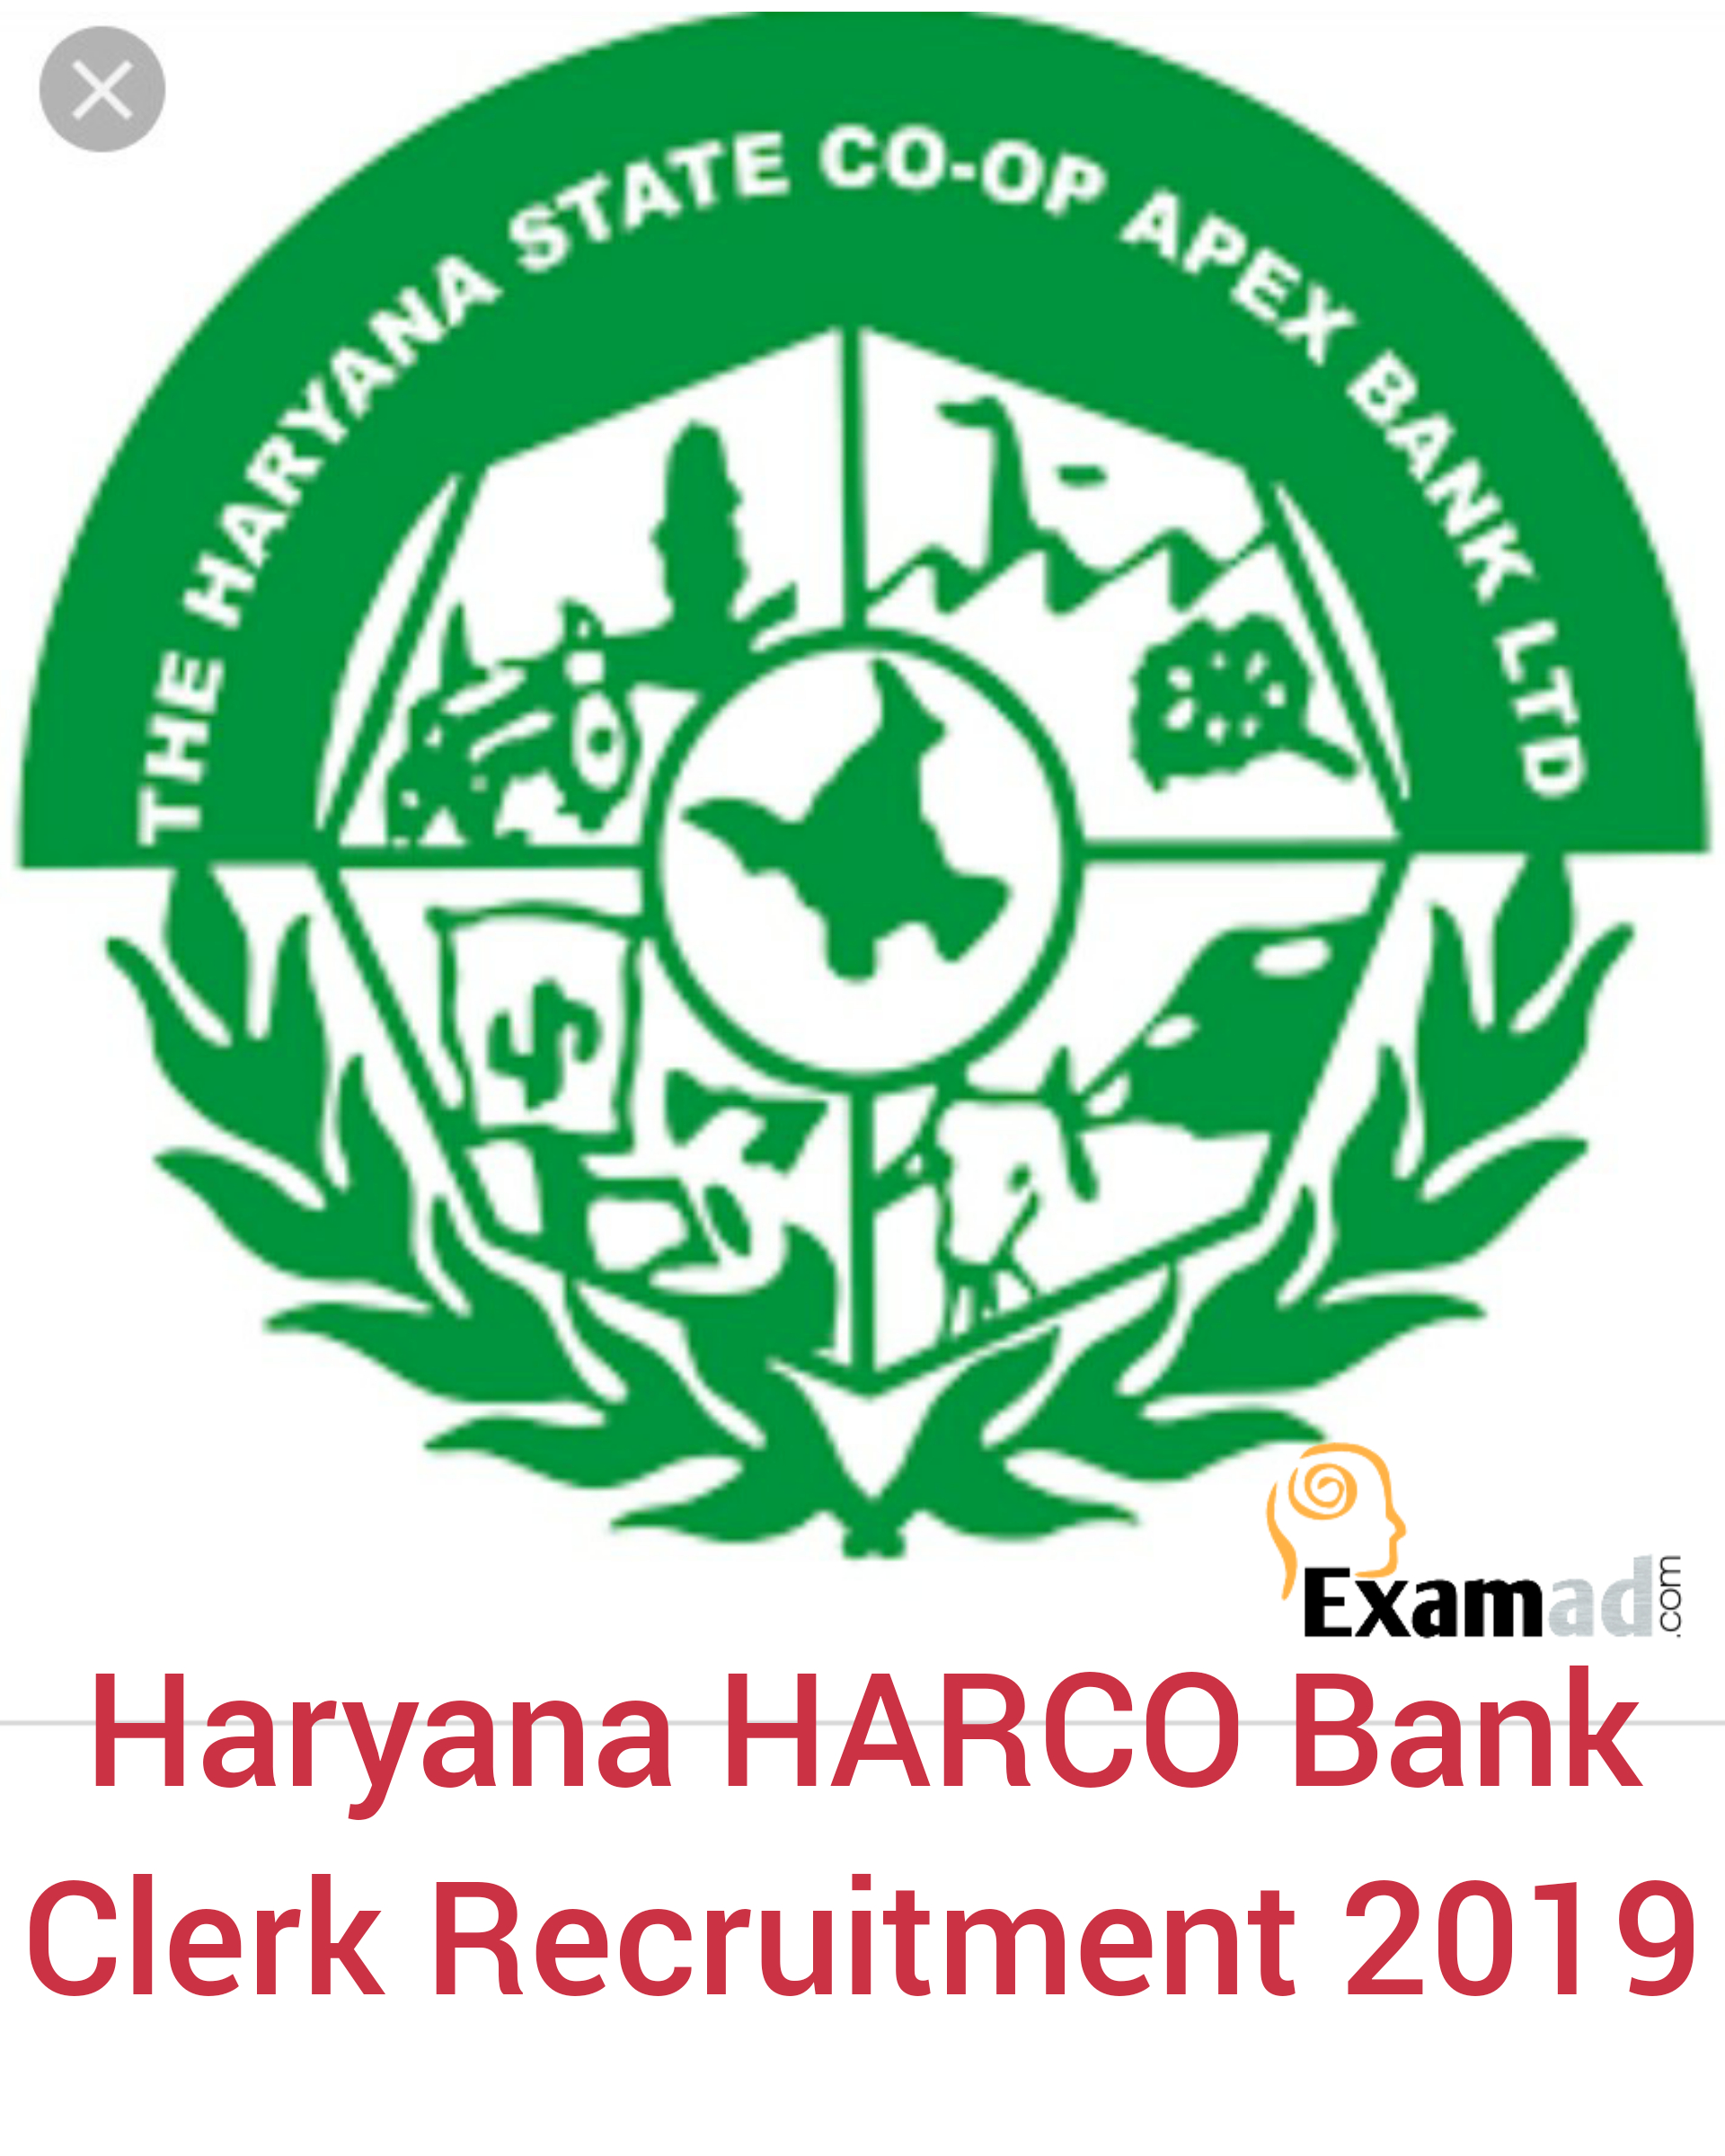 Haryana HARCO Bank Clerk Syllabus and Exam Pattern 2019